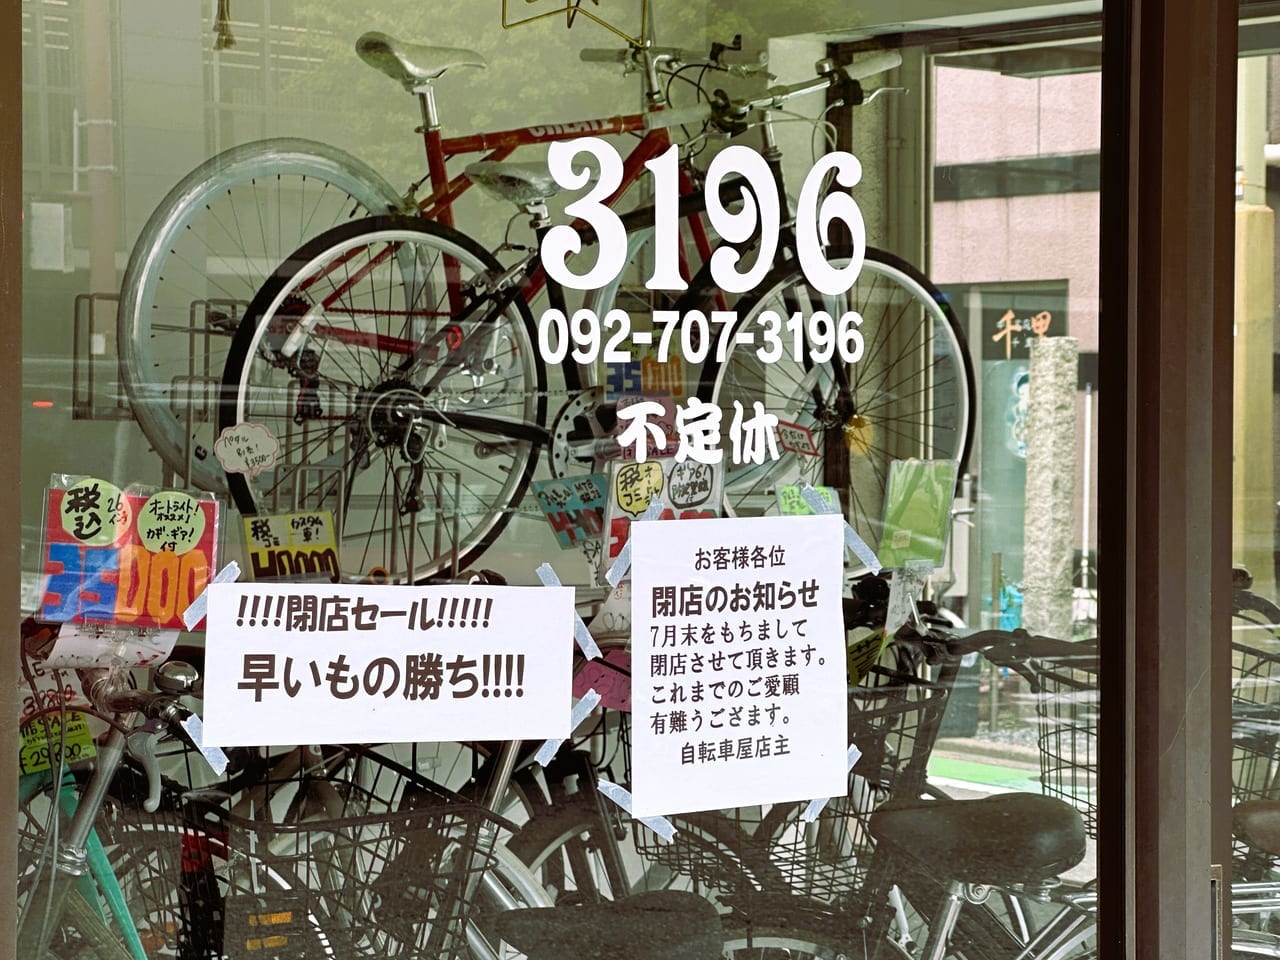 唐人町の自転車屋『 ボンサイクル 』が閉店です。